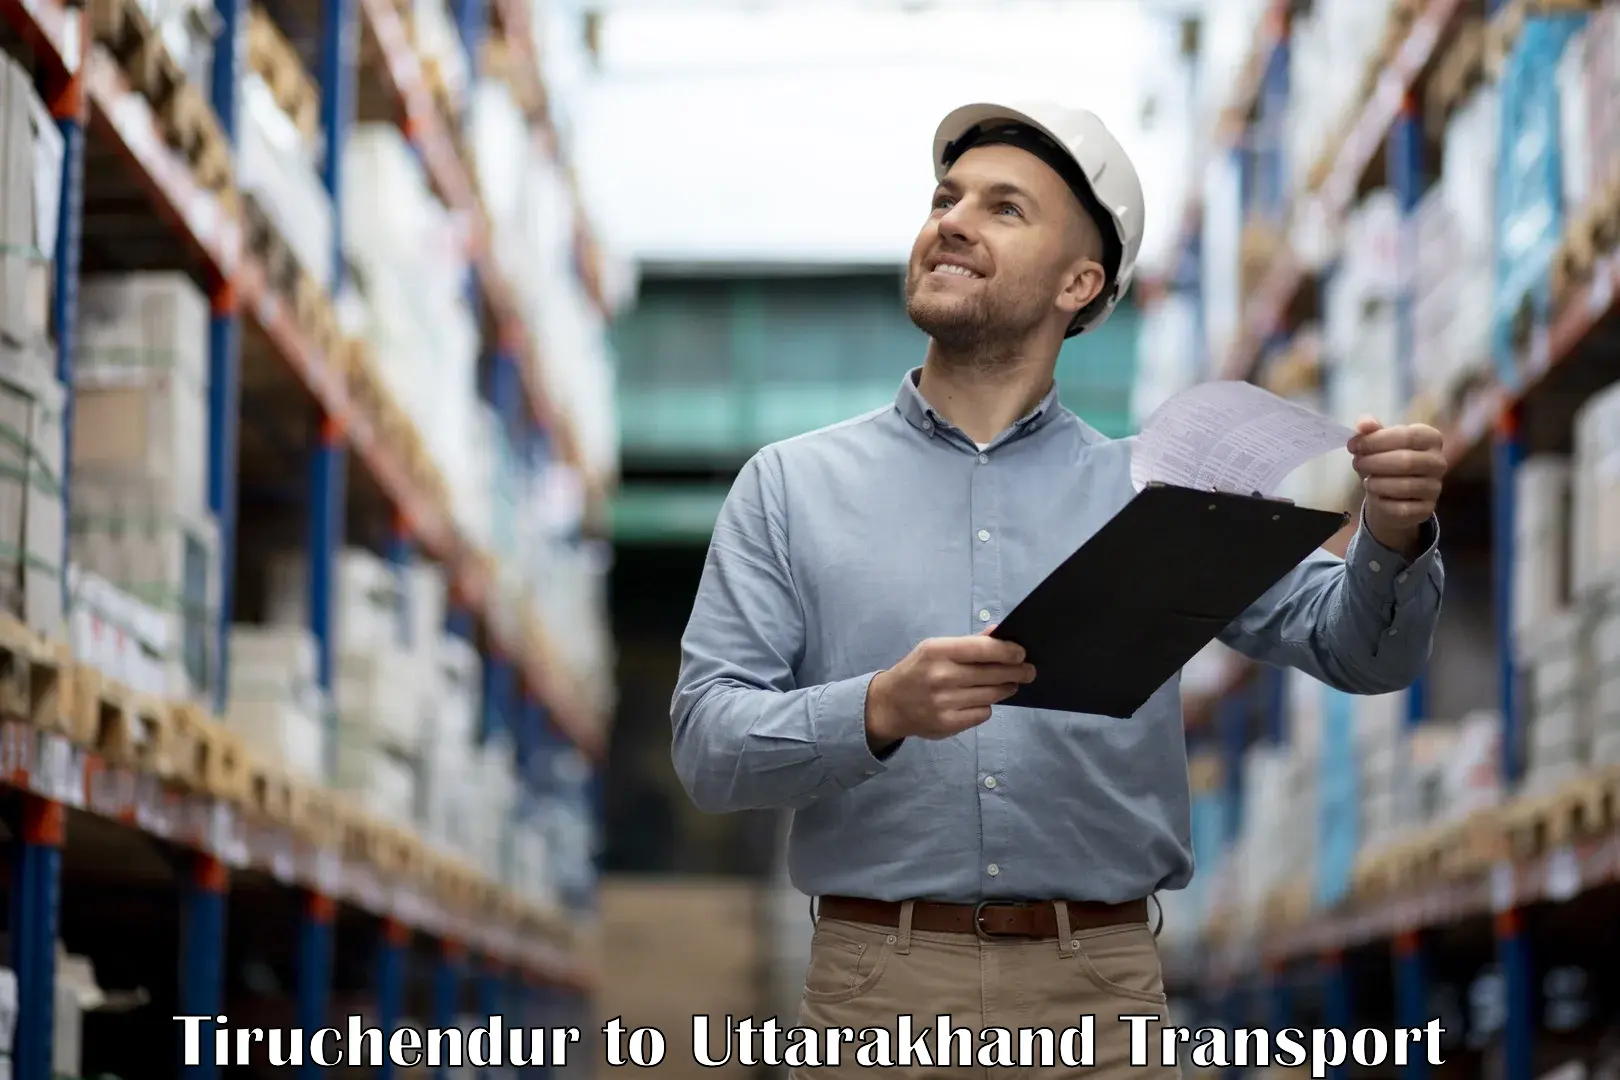 International cargo transportation services Tiruchendur to IIT Roorkee